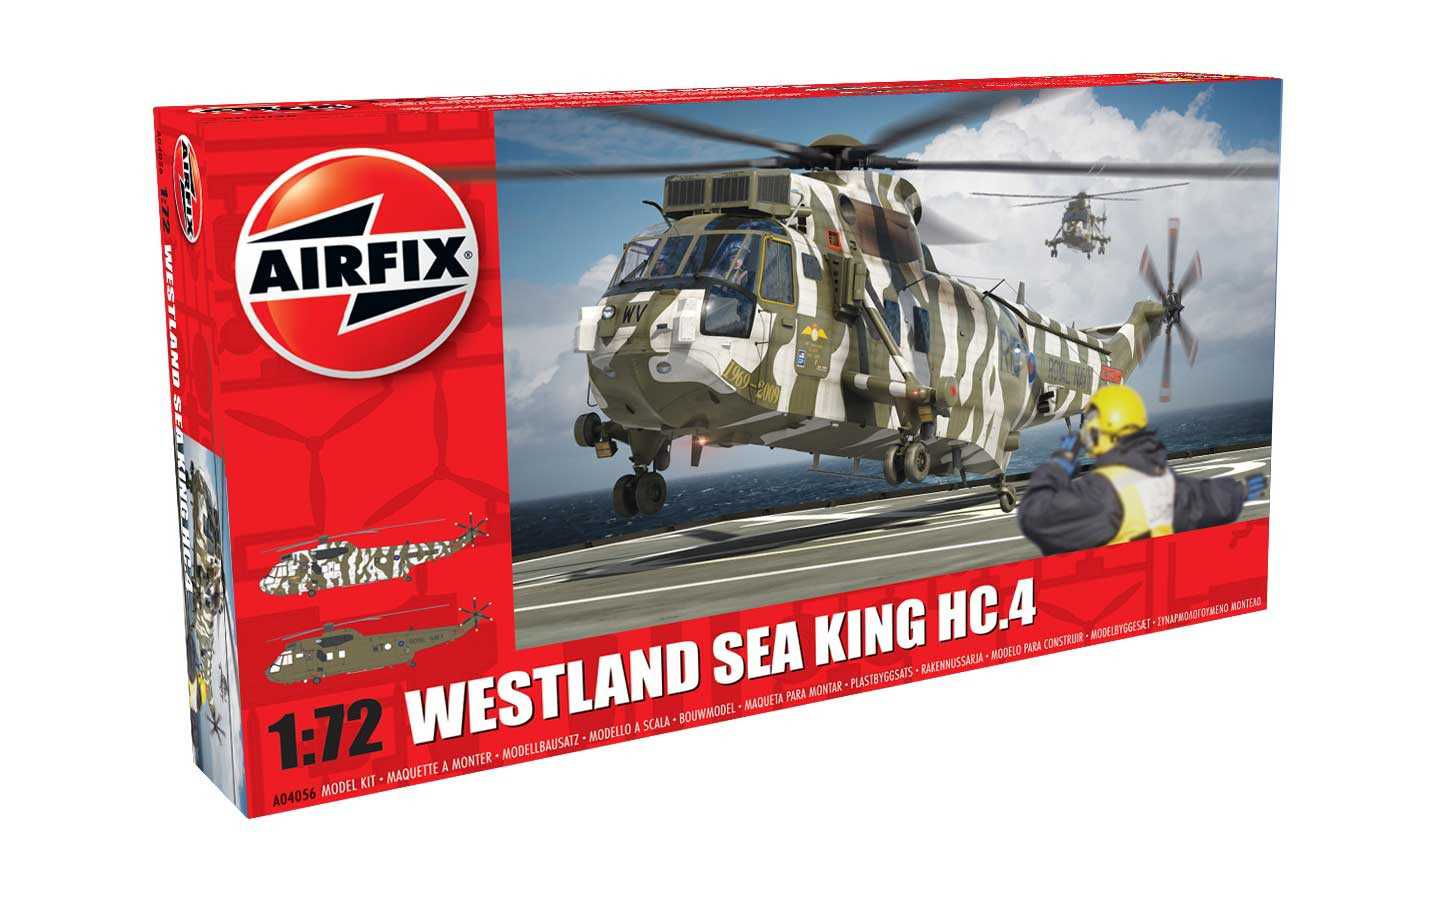 Fotografie Classic Kit vrtulník A04056 - Westland Sea King HC.4 (1:72) - nová forma